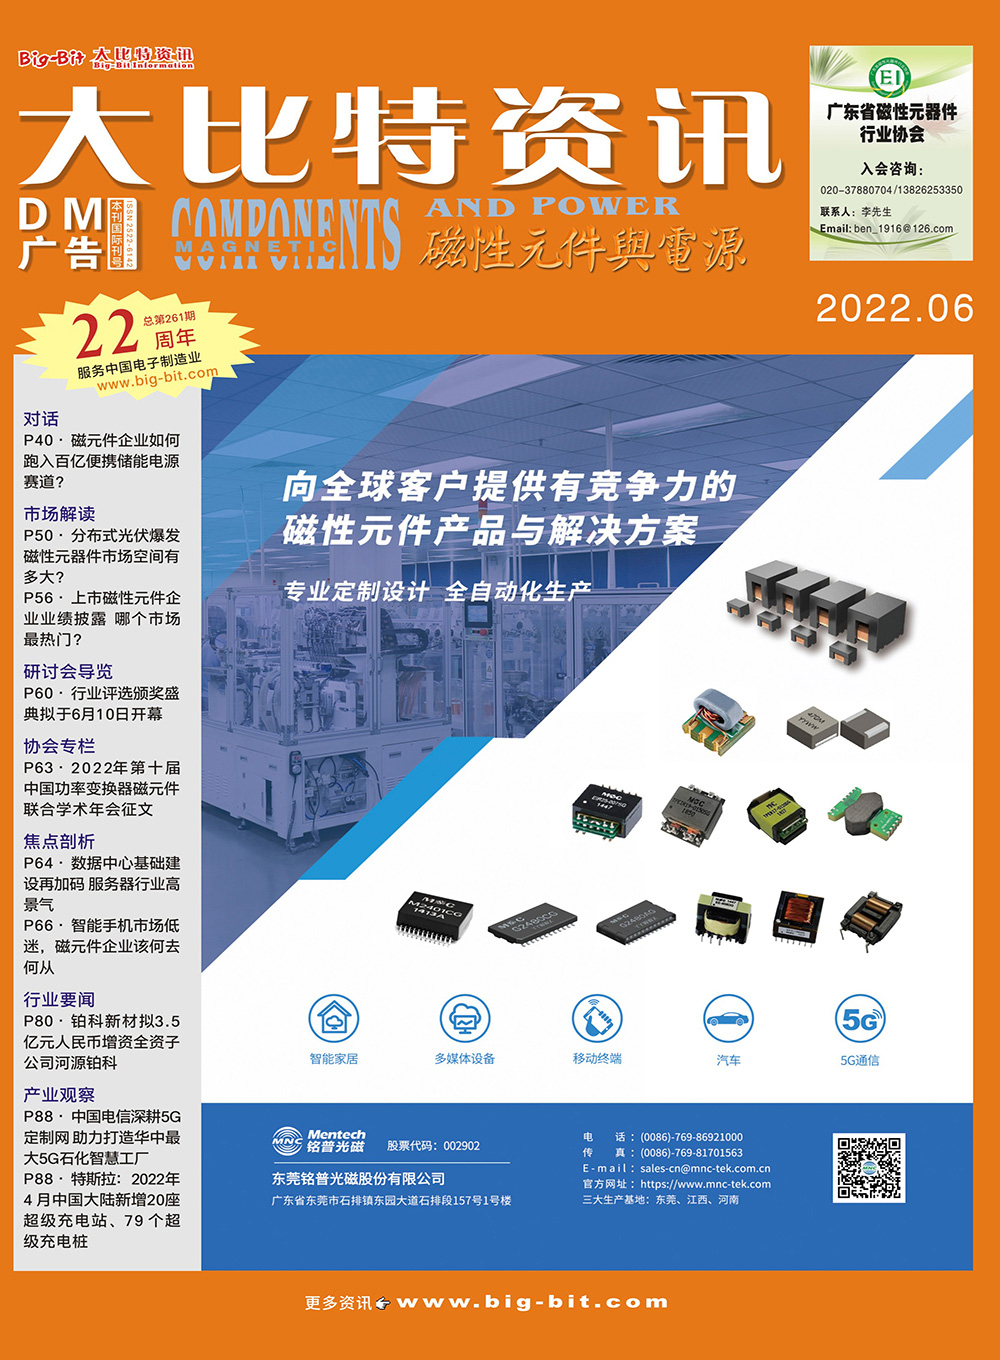 《磁性元件与电源》杂志2022年06月刊